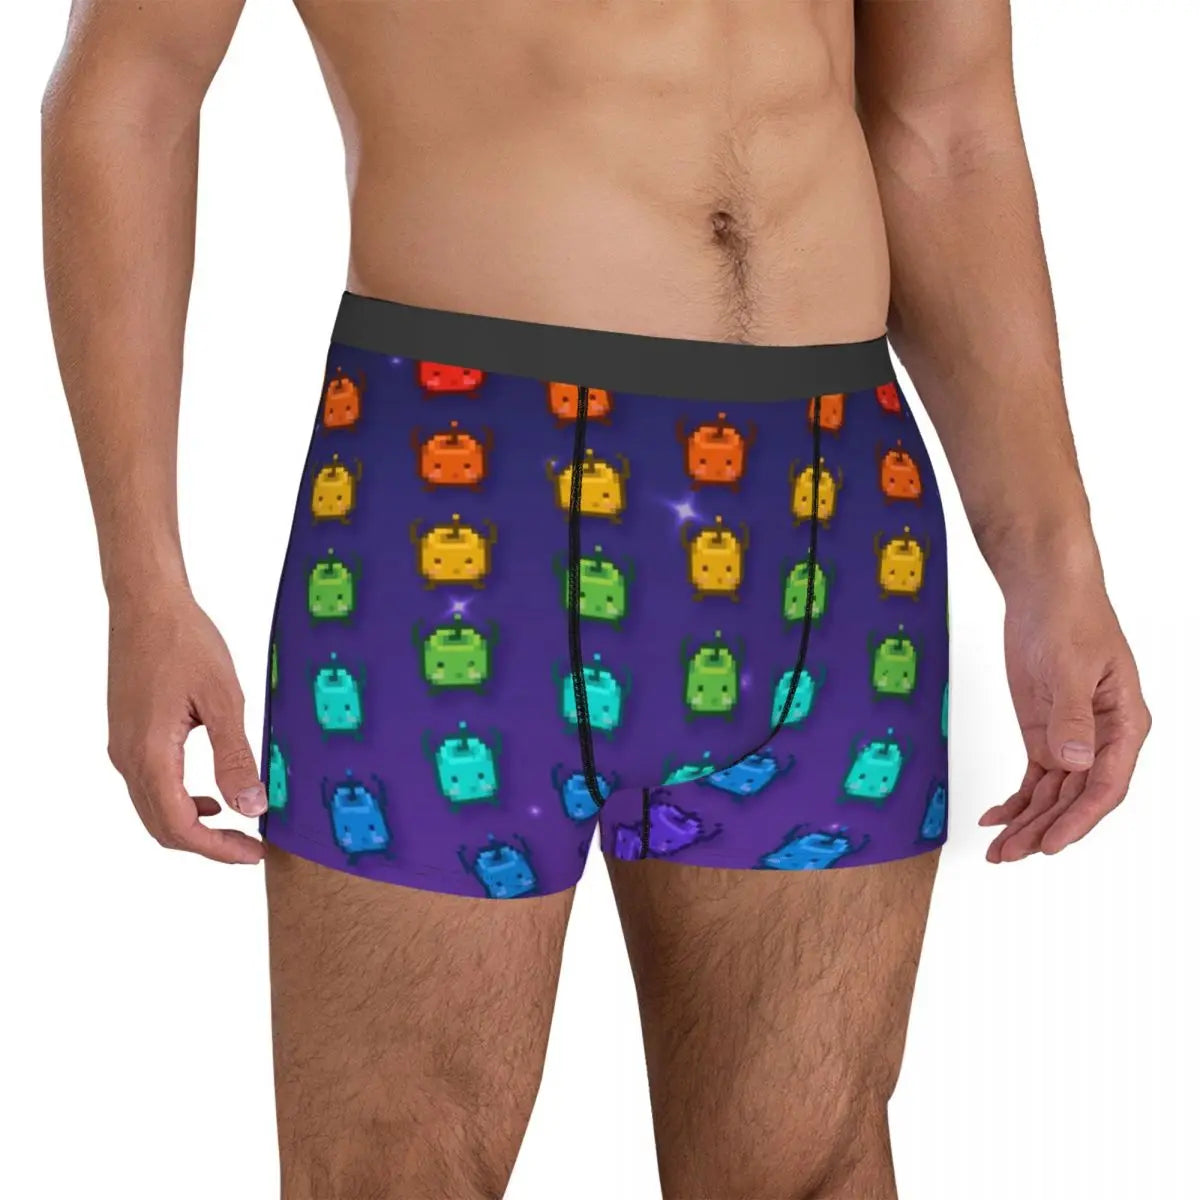 Hommes Stardew Valley arc-en-ciel Junimos sous-vêtements jeu vidéo nouveauté Boxer Shorts culottes mâle doux caleçons S-XXL